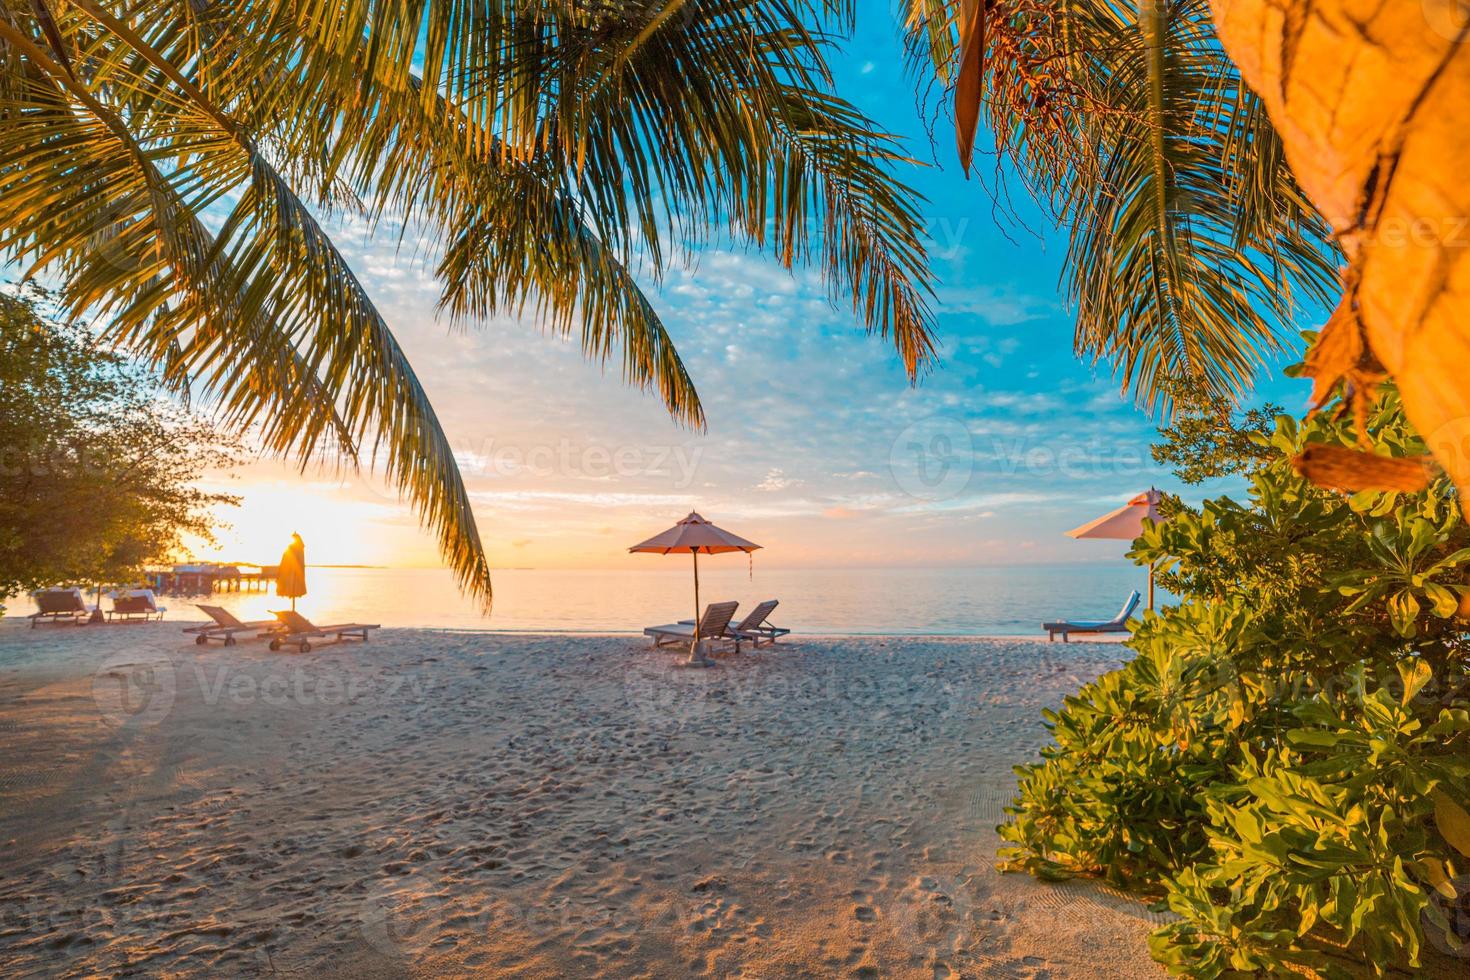 hermoso paisaje de puesta de sol tropical, dos hamacas, tumbonas, sombrilla debajo de una palmera. arena blanca, vista al mar con horizonte, cielo crepuscular colorido, tranquilidad y relajación. hotel de resort de playa inspirador foto